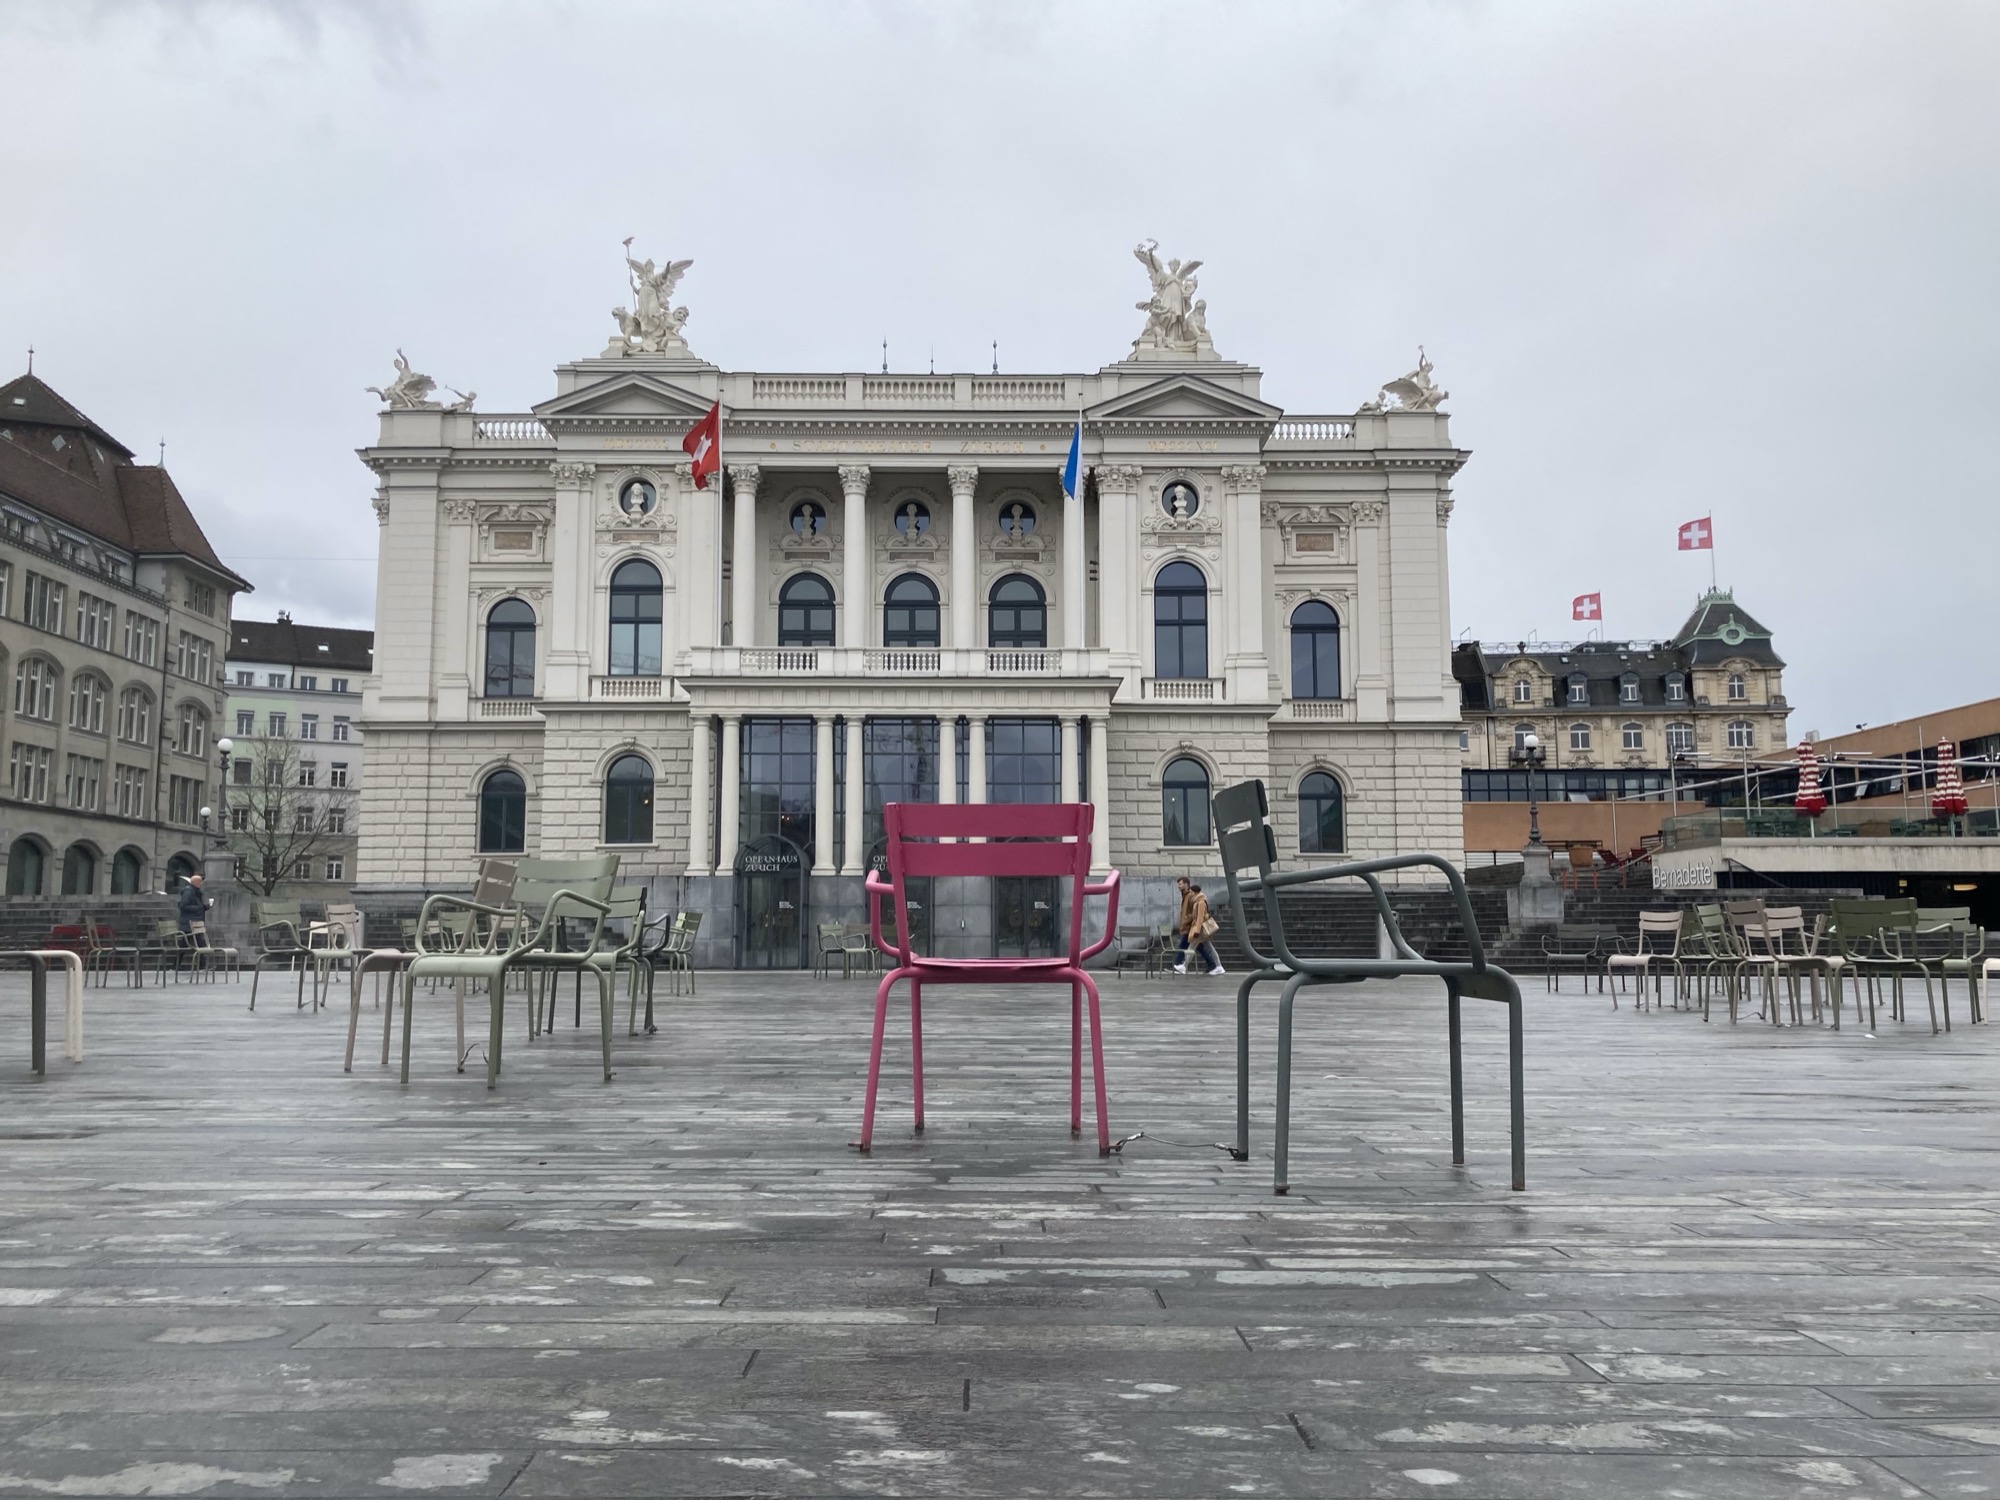 Opernhaus Zürich, davor zufällig angeordnete Gruppen von Metallsesseln, zentral in der Mitte steht ein vereinzelter rosafarbener Sessel